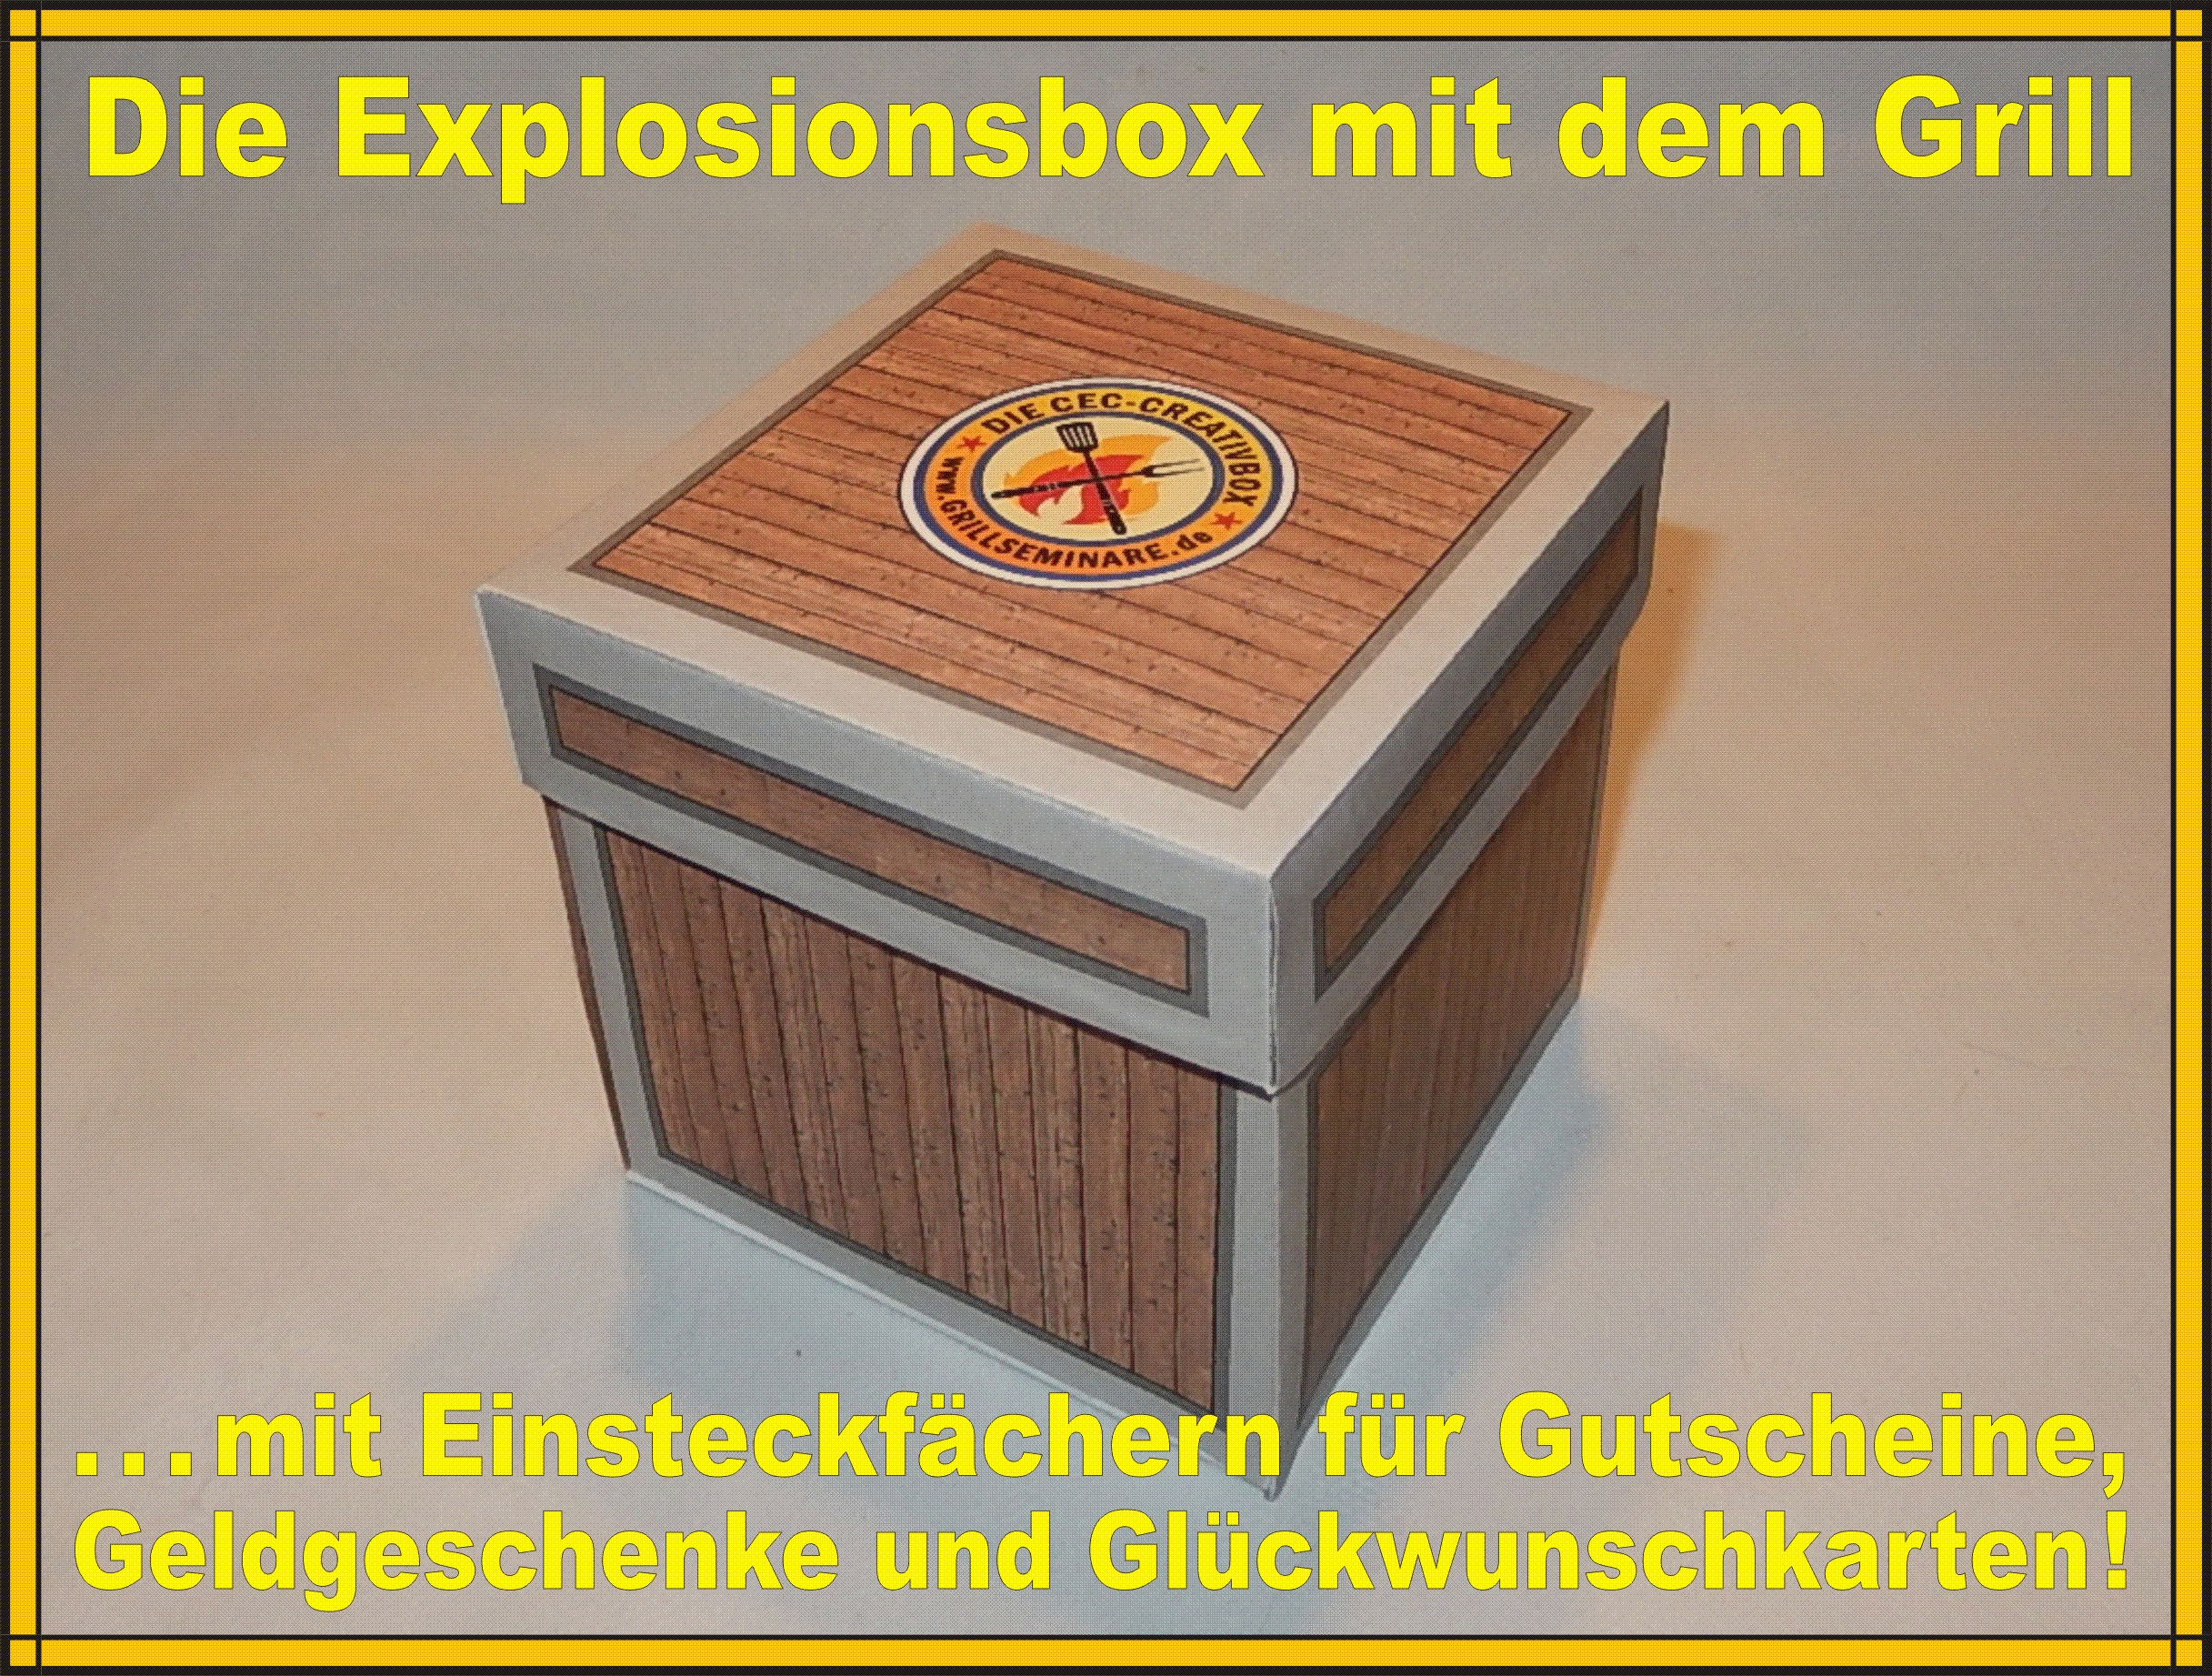 Explosionsbox mit Grill als creative Geschenkidee